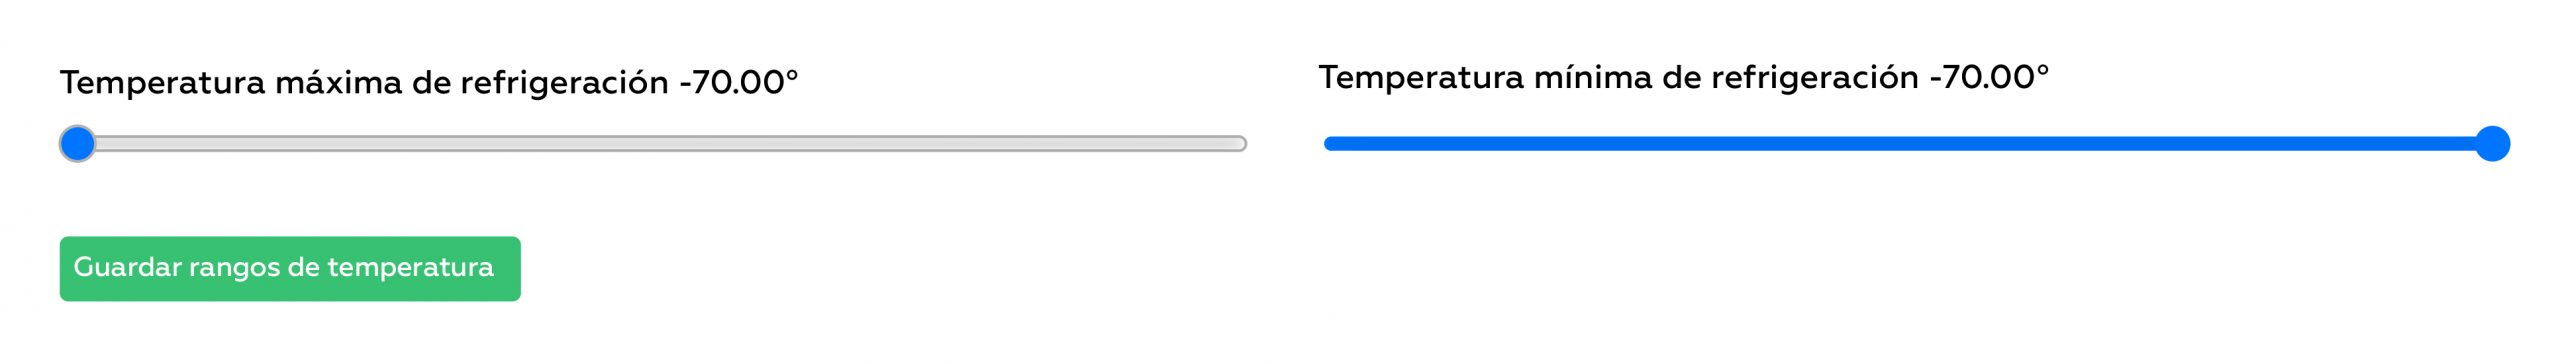 Configuración de temperaturas de una unidad refrigerada.